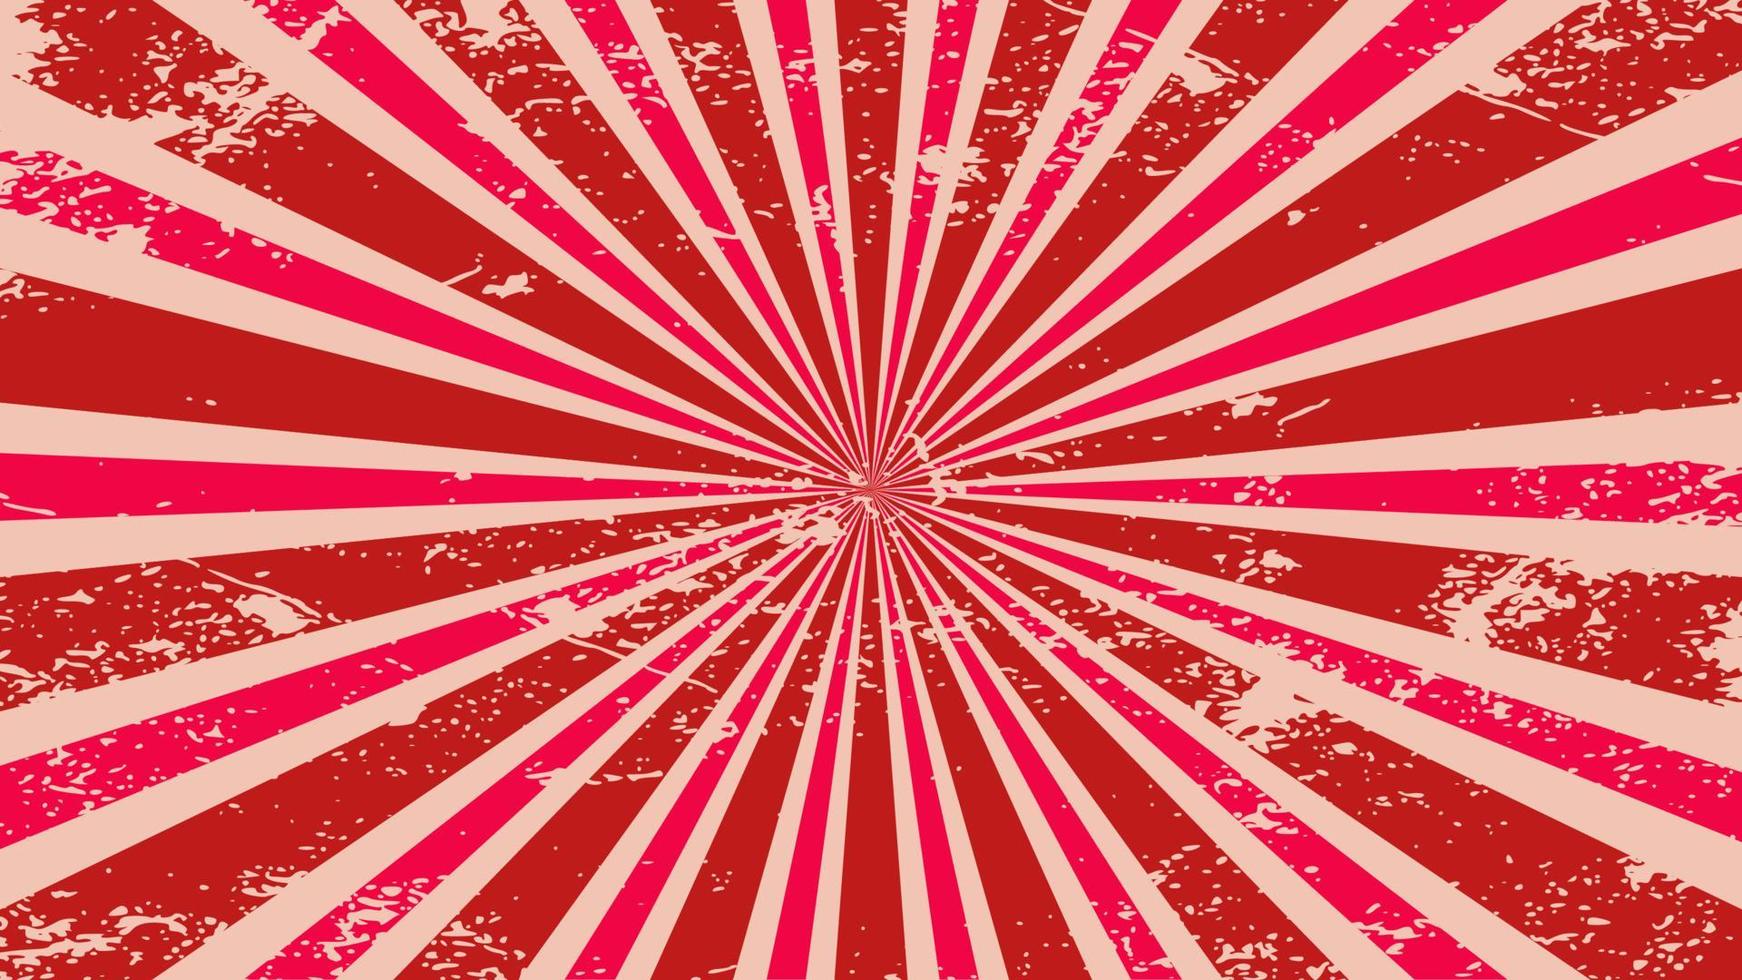 Red vintage sunburst background vector